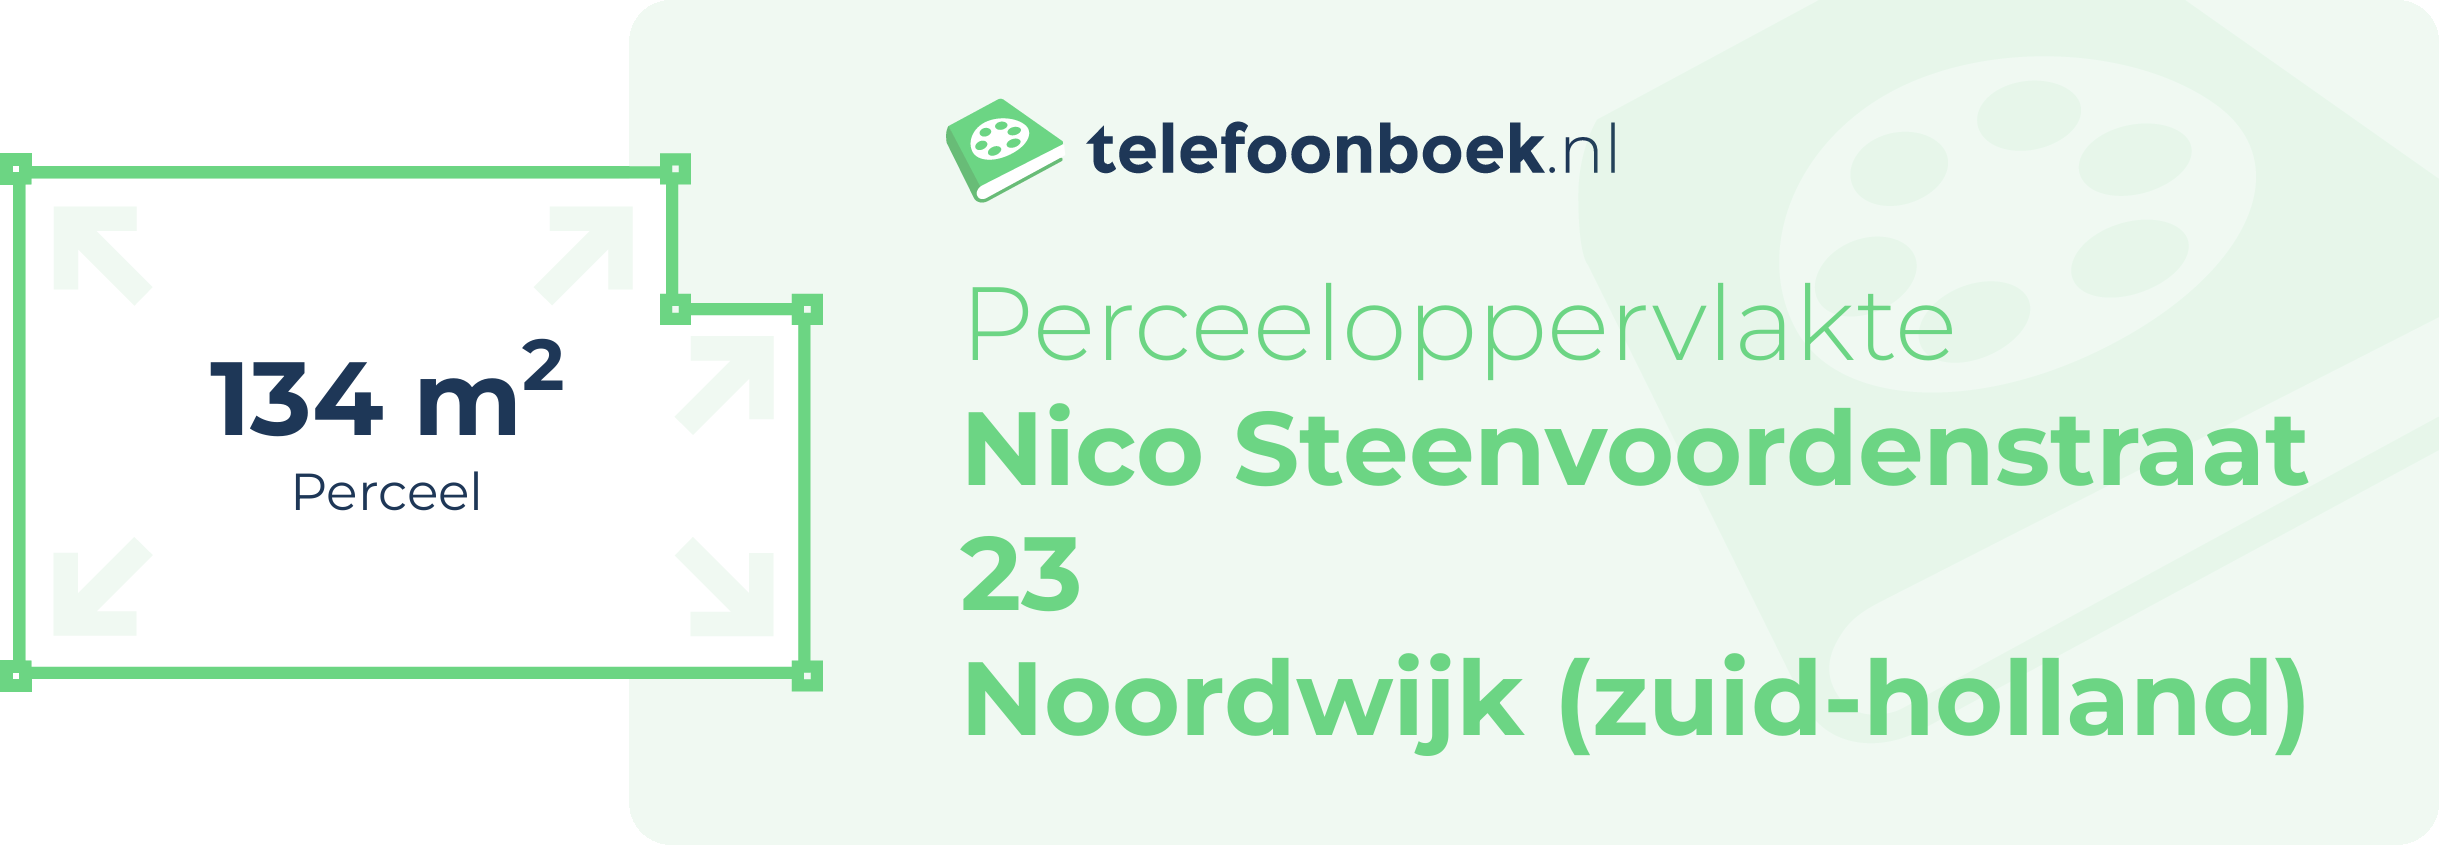 Perceeloppervlakte Nico Steenvoordenstraat 23 Noordwijk (Zuid-Holland)